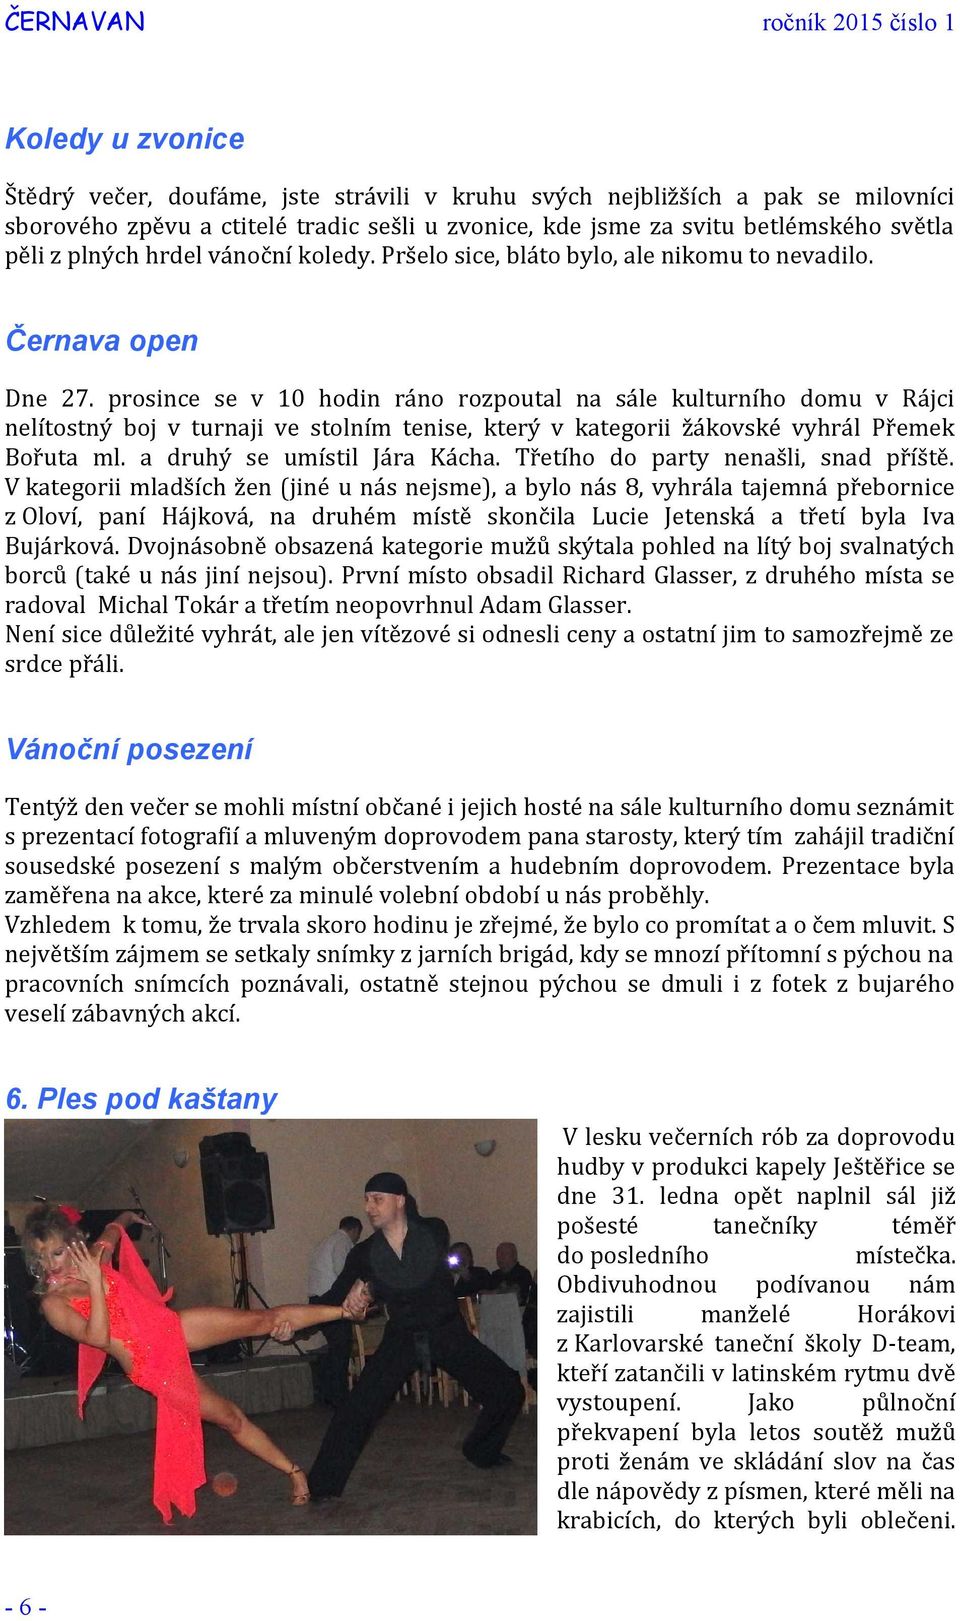 prosince se v 10 hodin ráno rozpoutal na sále kulturního domu v Rájci nelítostný boj v turnaji ve stolním tenise, který v kategorii žákovské vyhrál Přemek Bořuta ml. a druhý se umístil Jára Kácha.